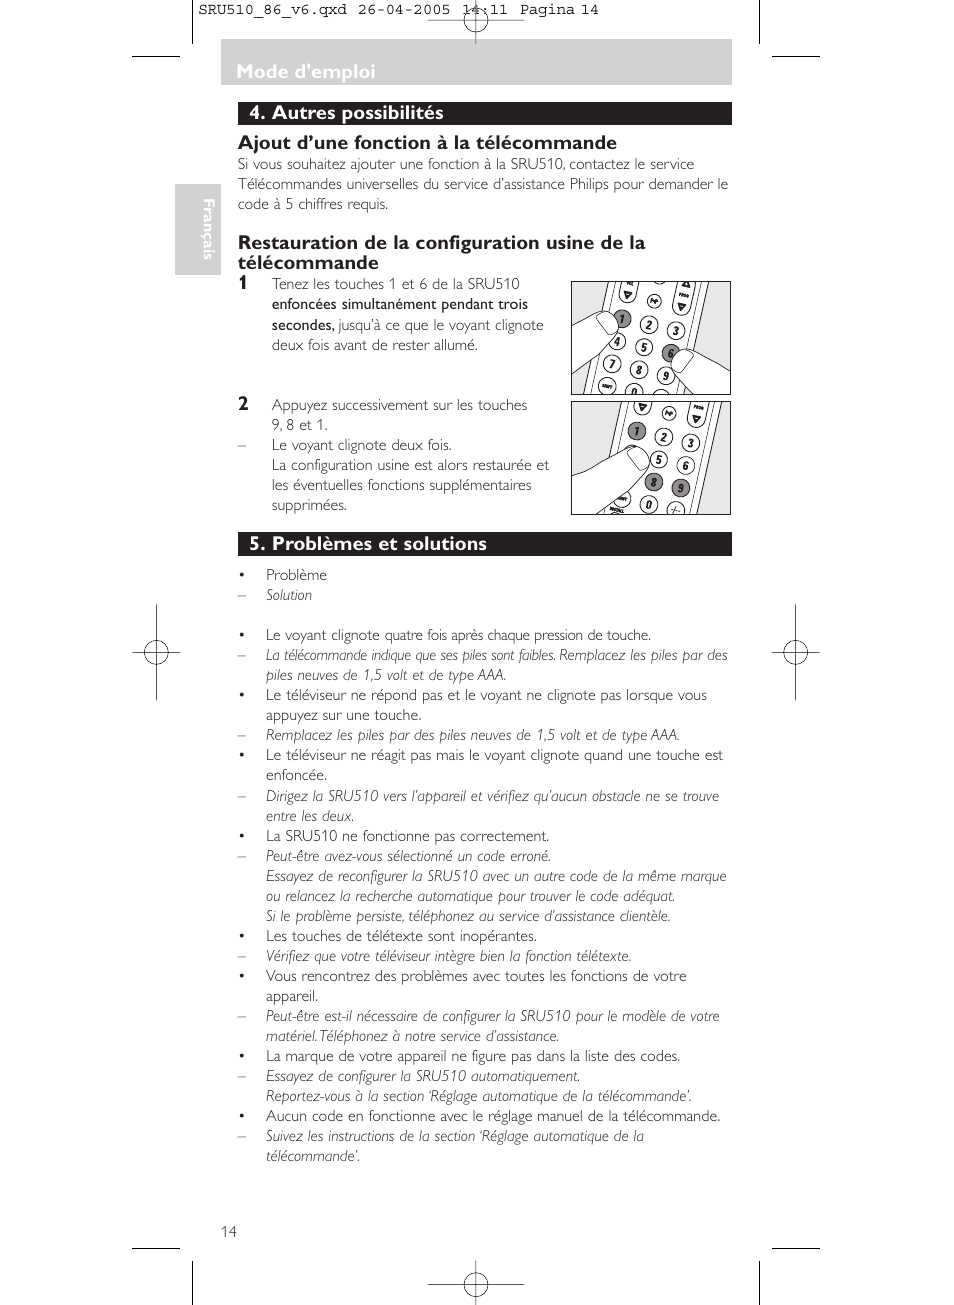 Mode d'emploi, Problèmes et solutions | Philips SRU 510/86 User Manual |  Page 14 / 60